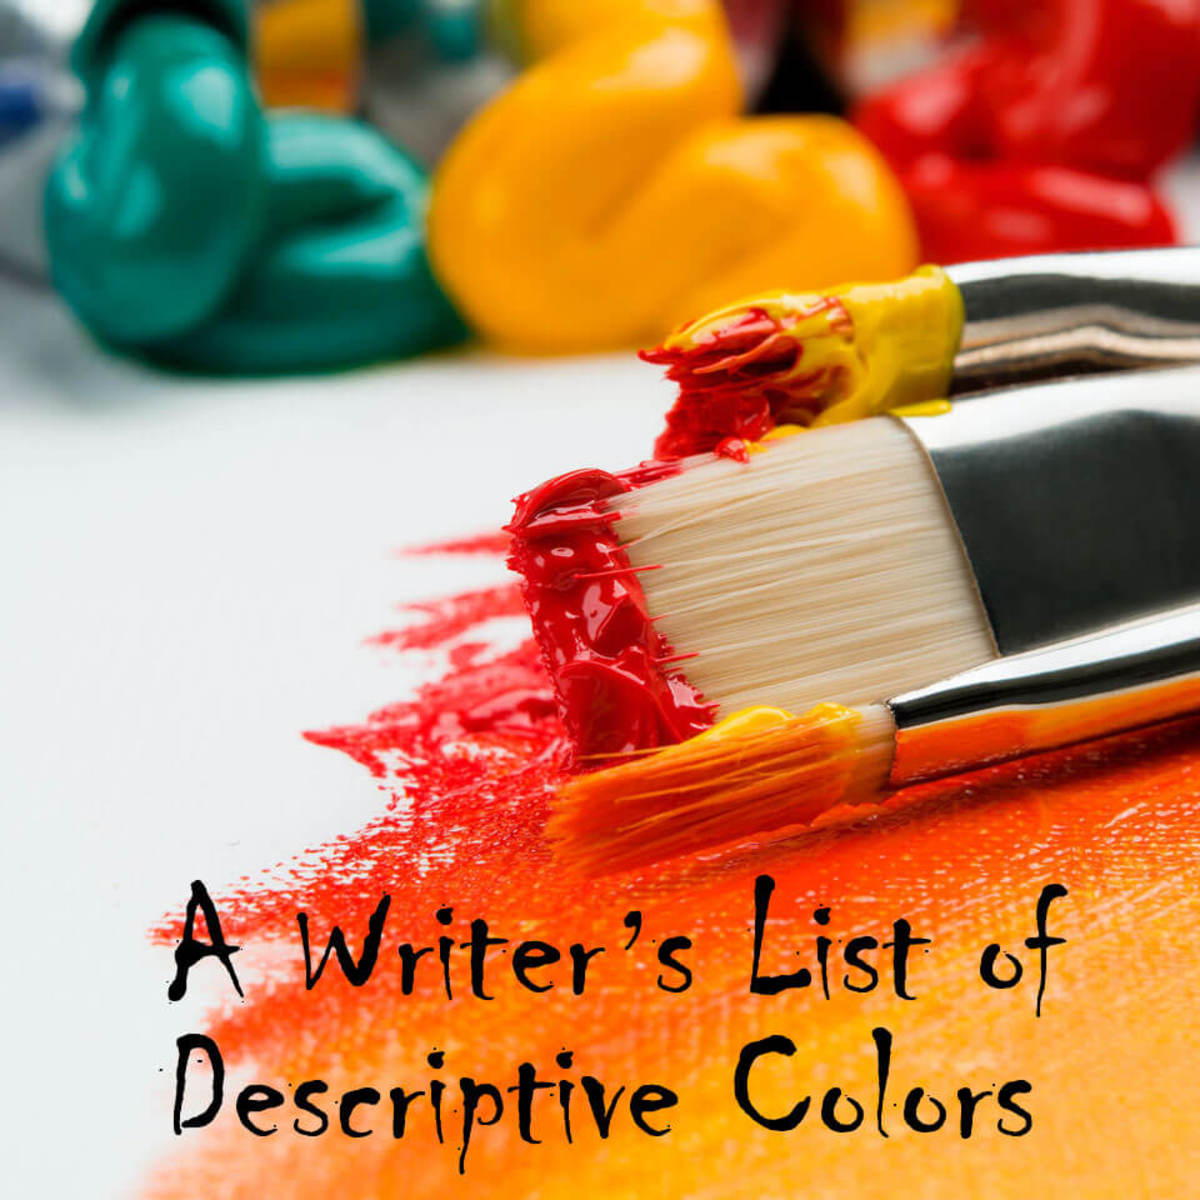 A Writer's List of Descriptive Colors